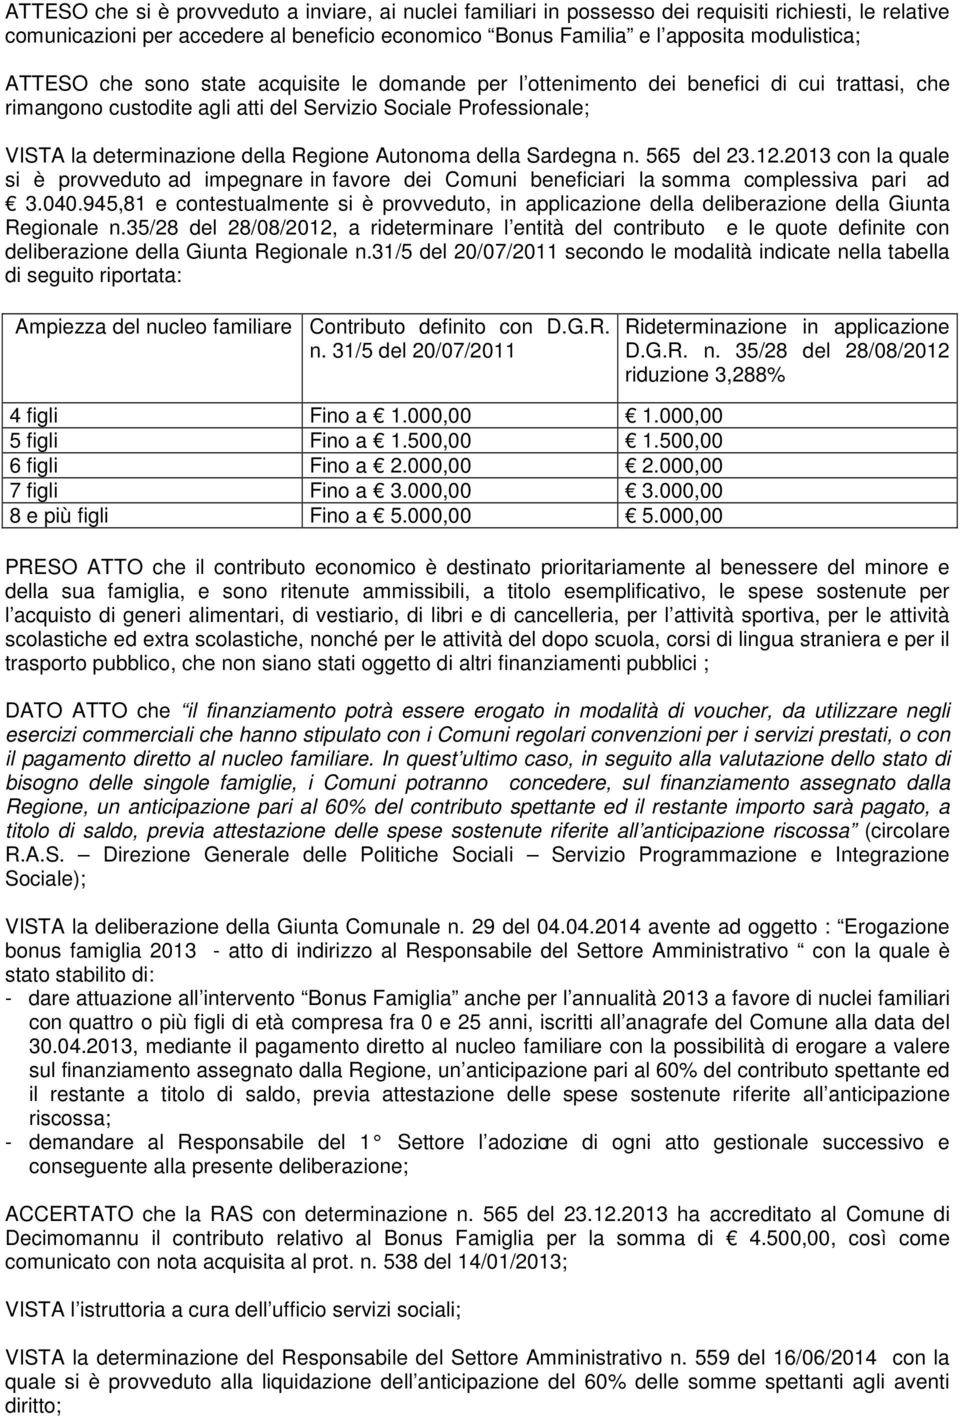 Autonoma della Sardegna n. 565 del 23.12.2013 con la quale si è provveduto ad impegnare in favore dei Comuni beneficiari la somma complessiva pari ad 3.040.